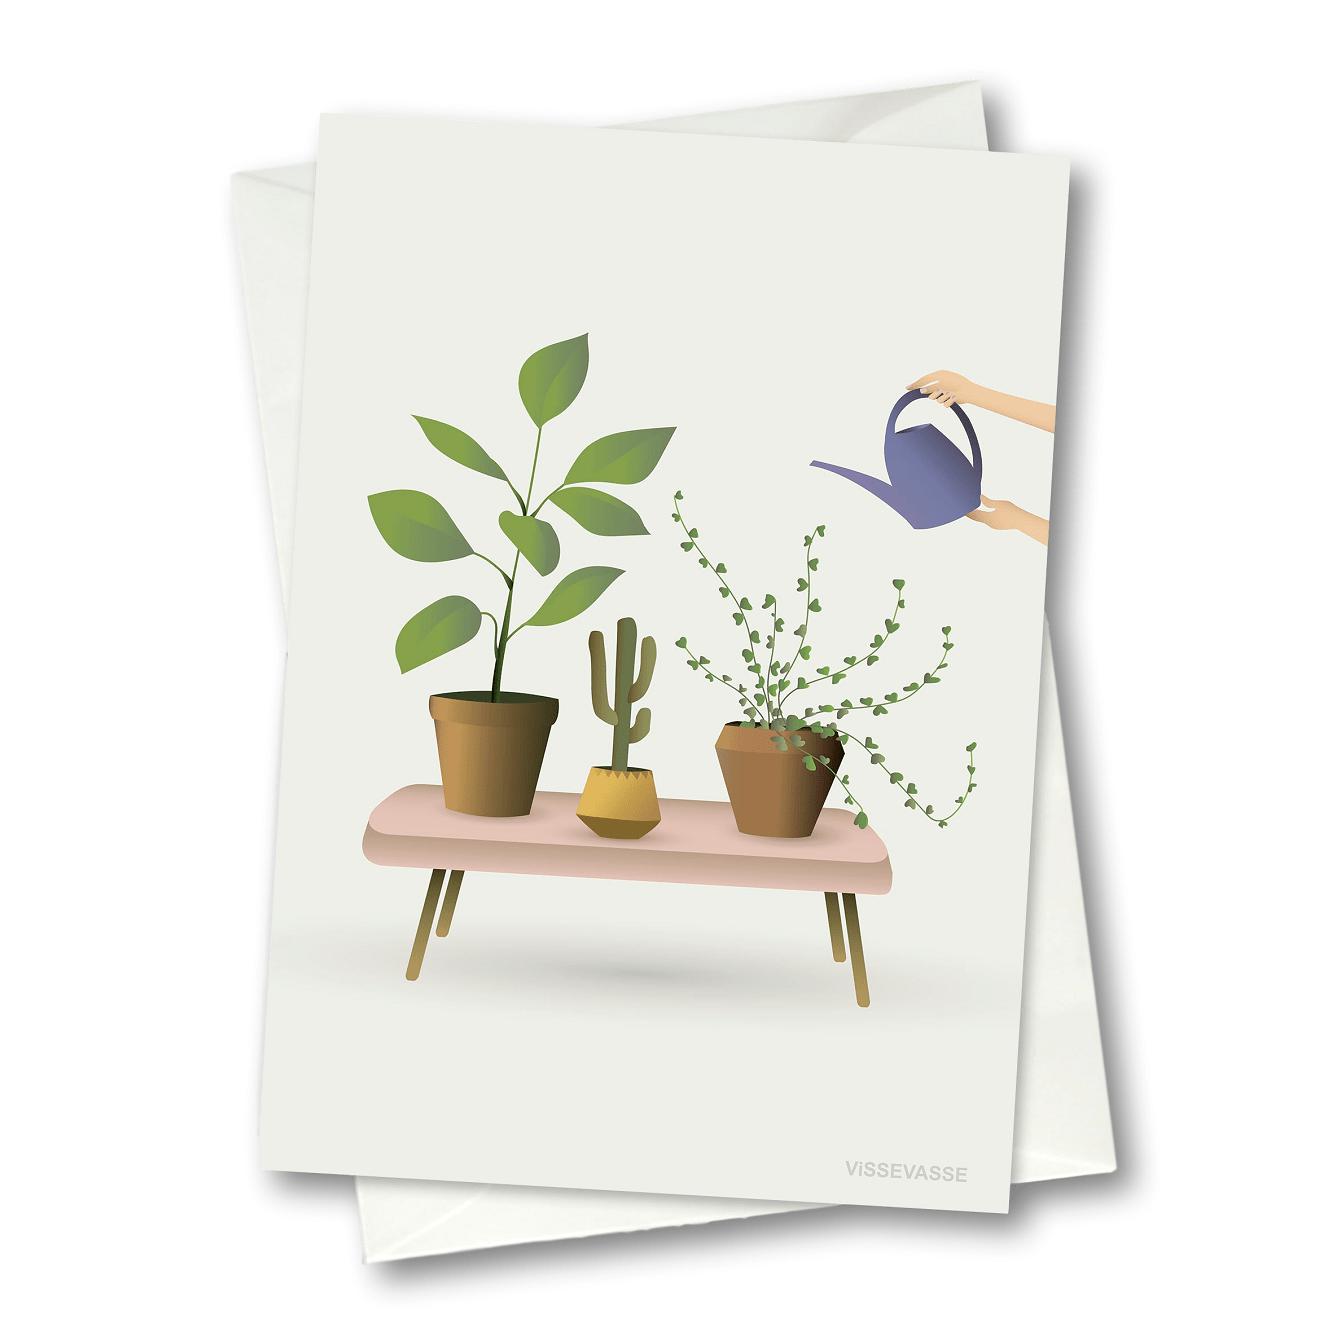 Vissevasse Rośliny Karta z życzeniami, 10,5 x 15 cm